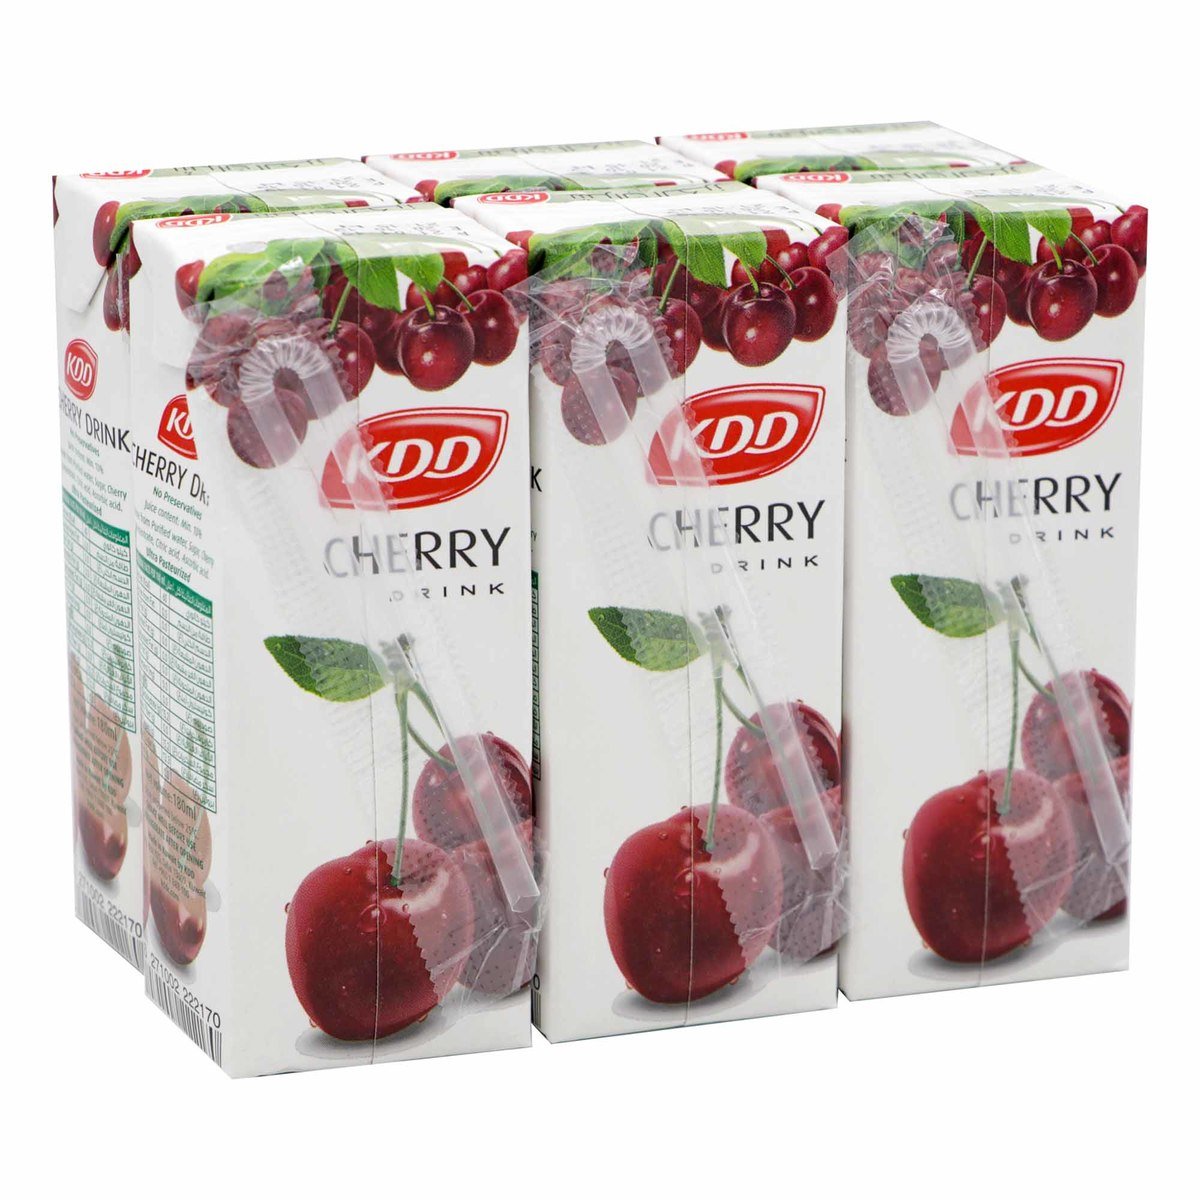 KDD Cherry Drink 6 x 180ml